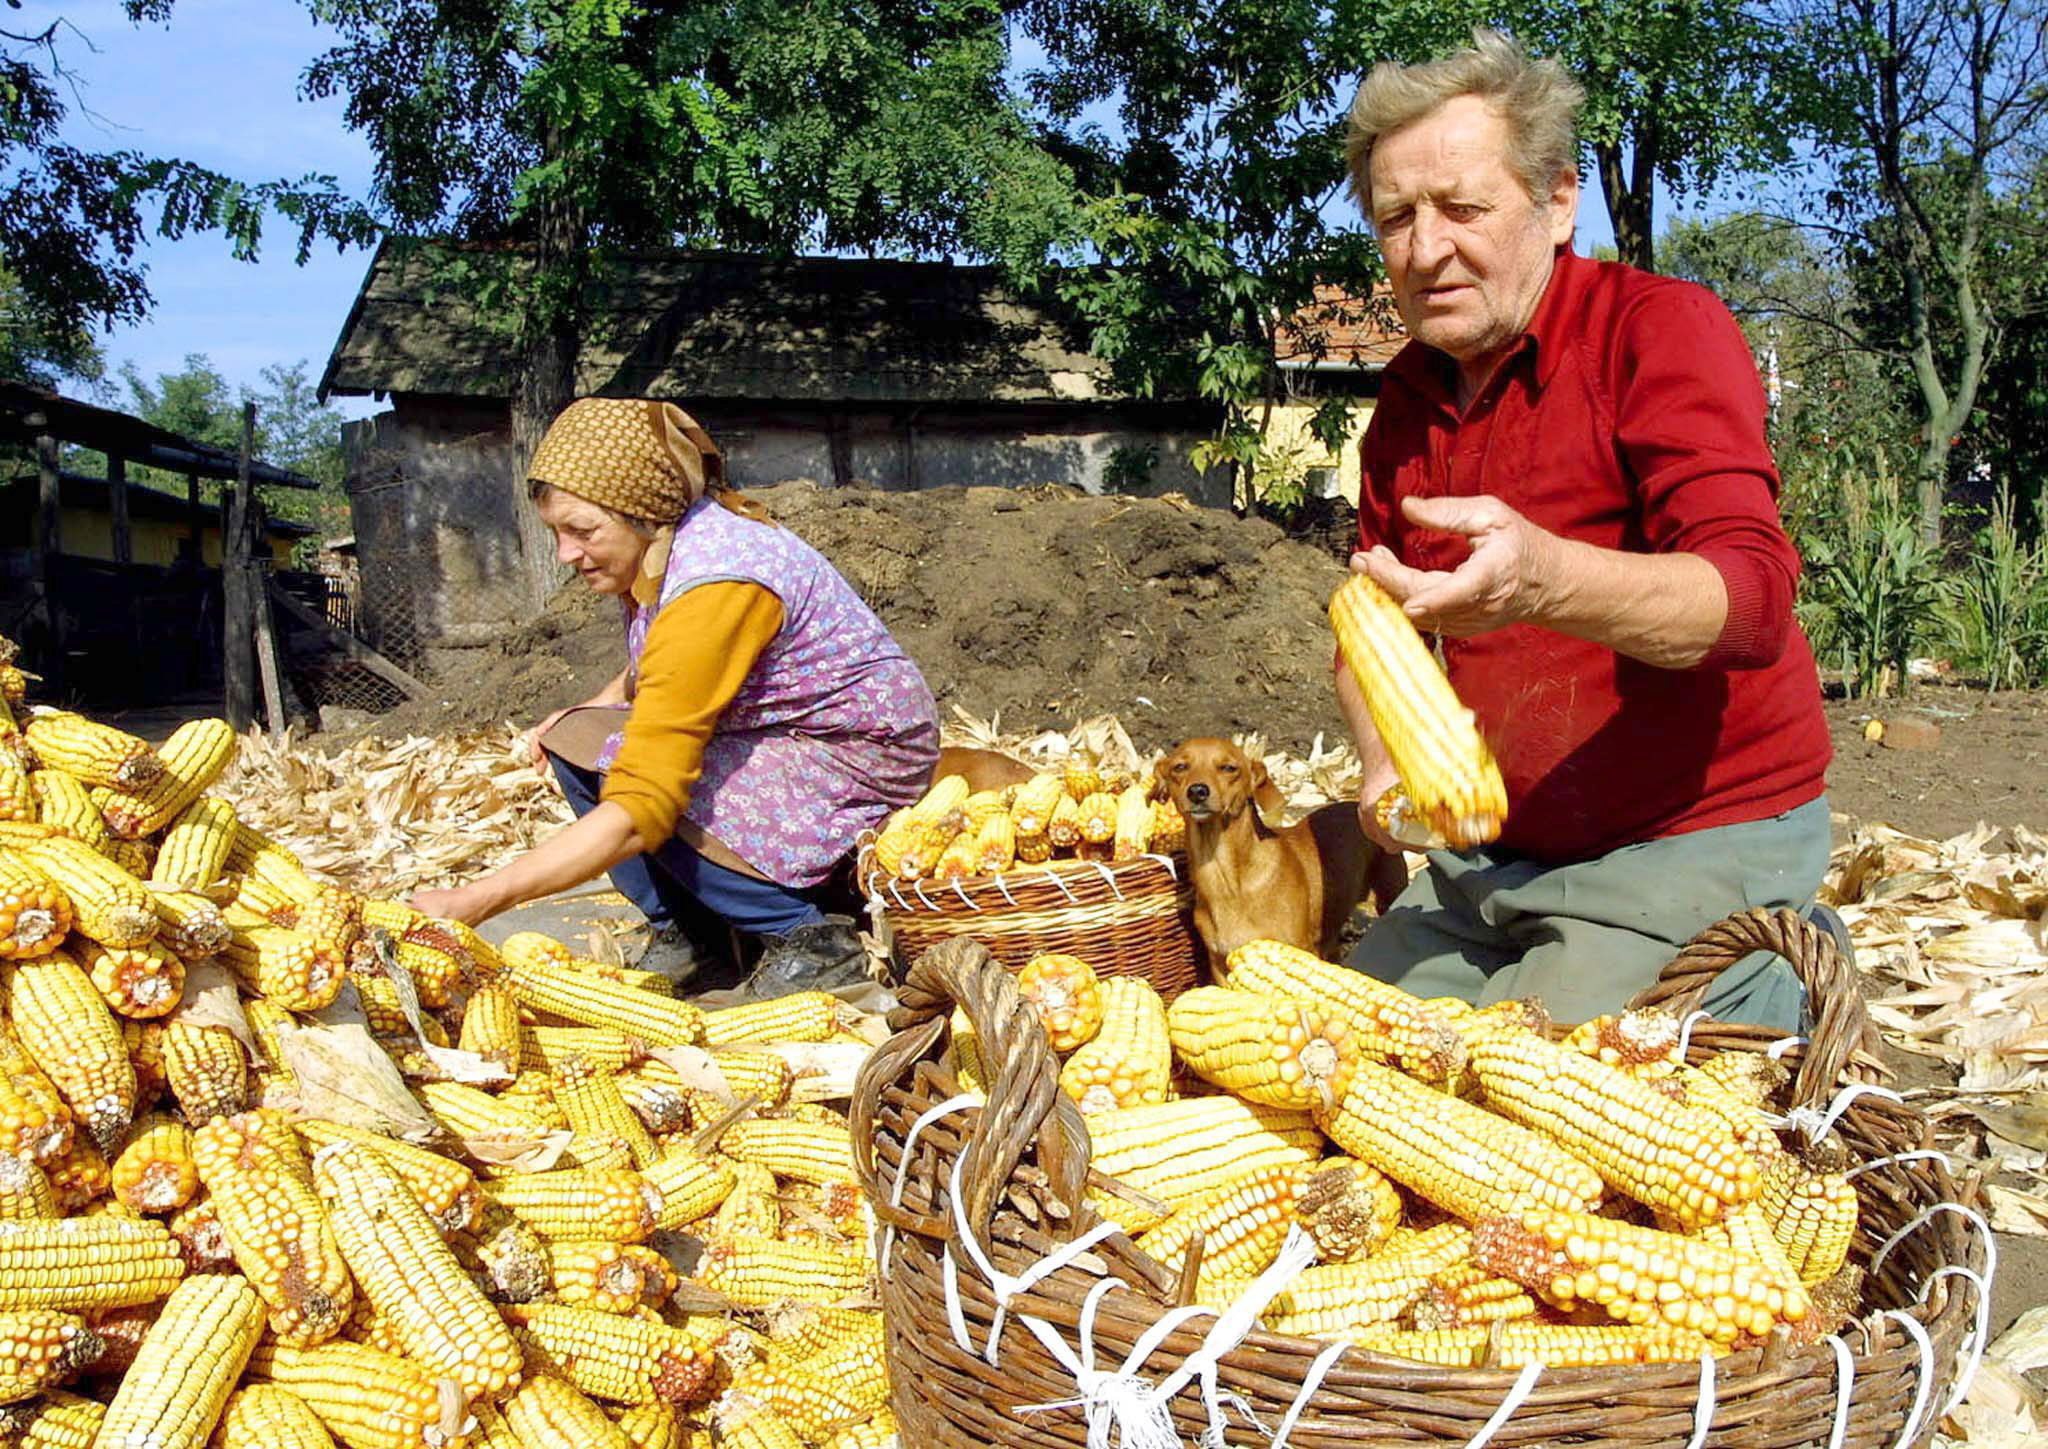 Familia seleccionando mazorcas de maíz en el sur de Hungría, agricultura familiar. Foto: STR/EFE